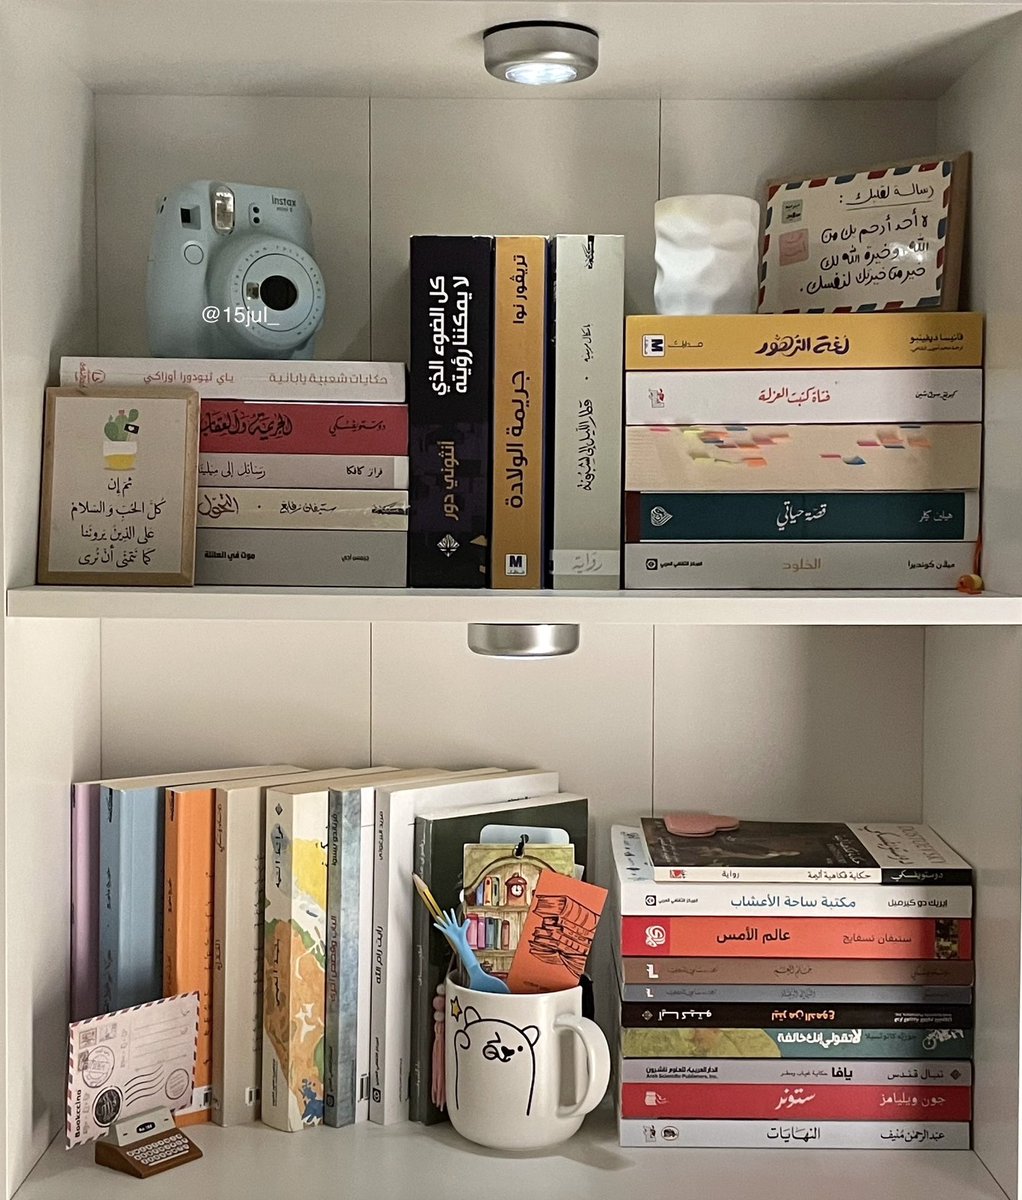 —Bright bookshelves